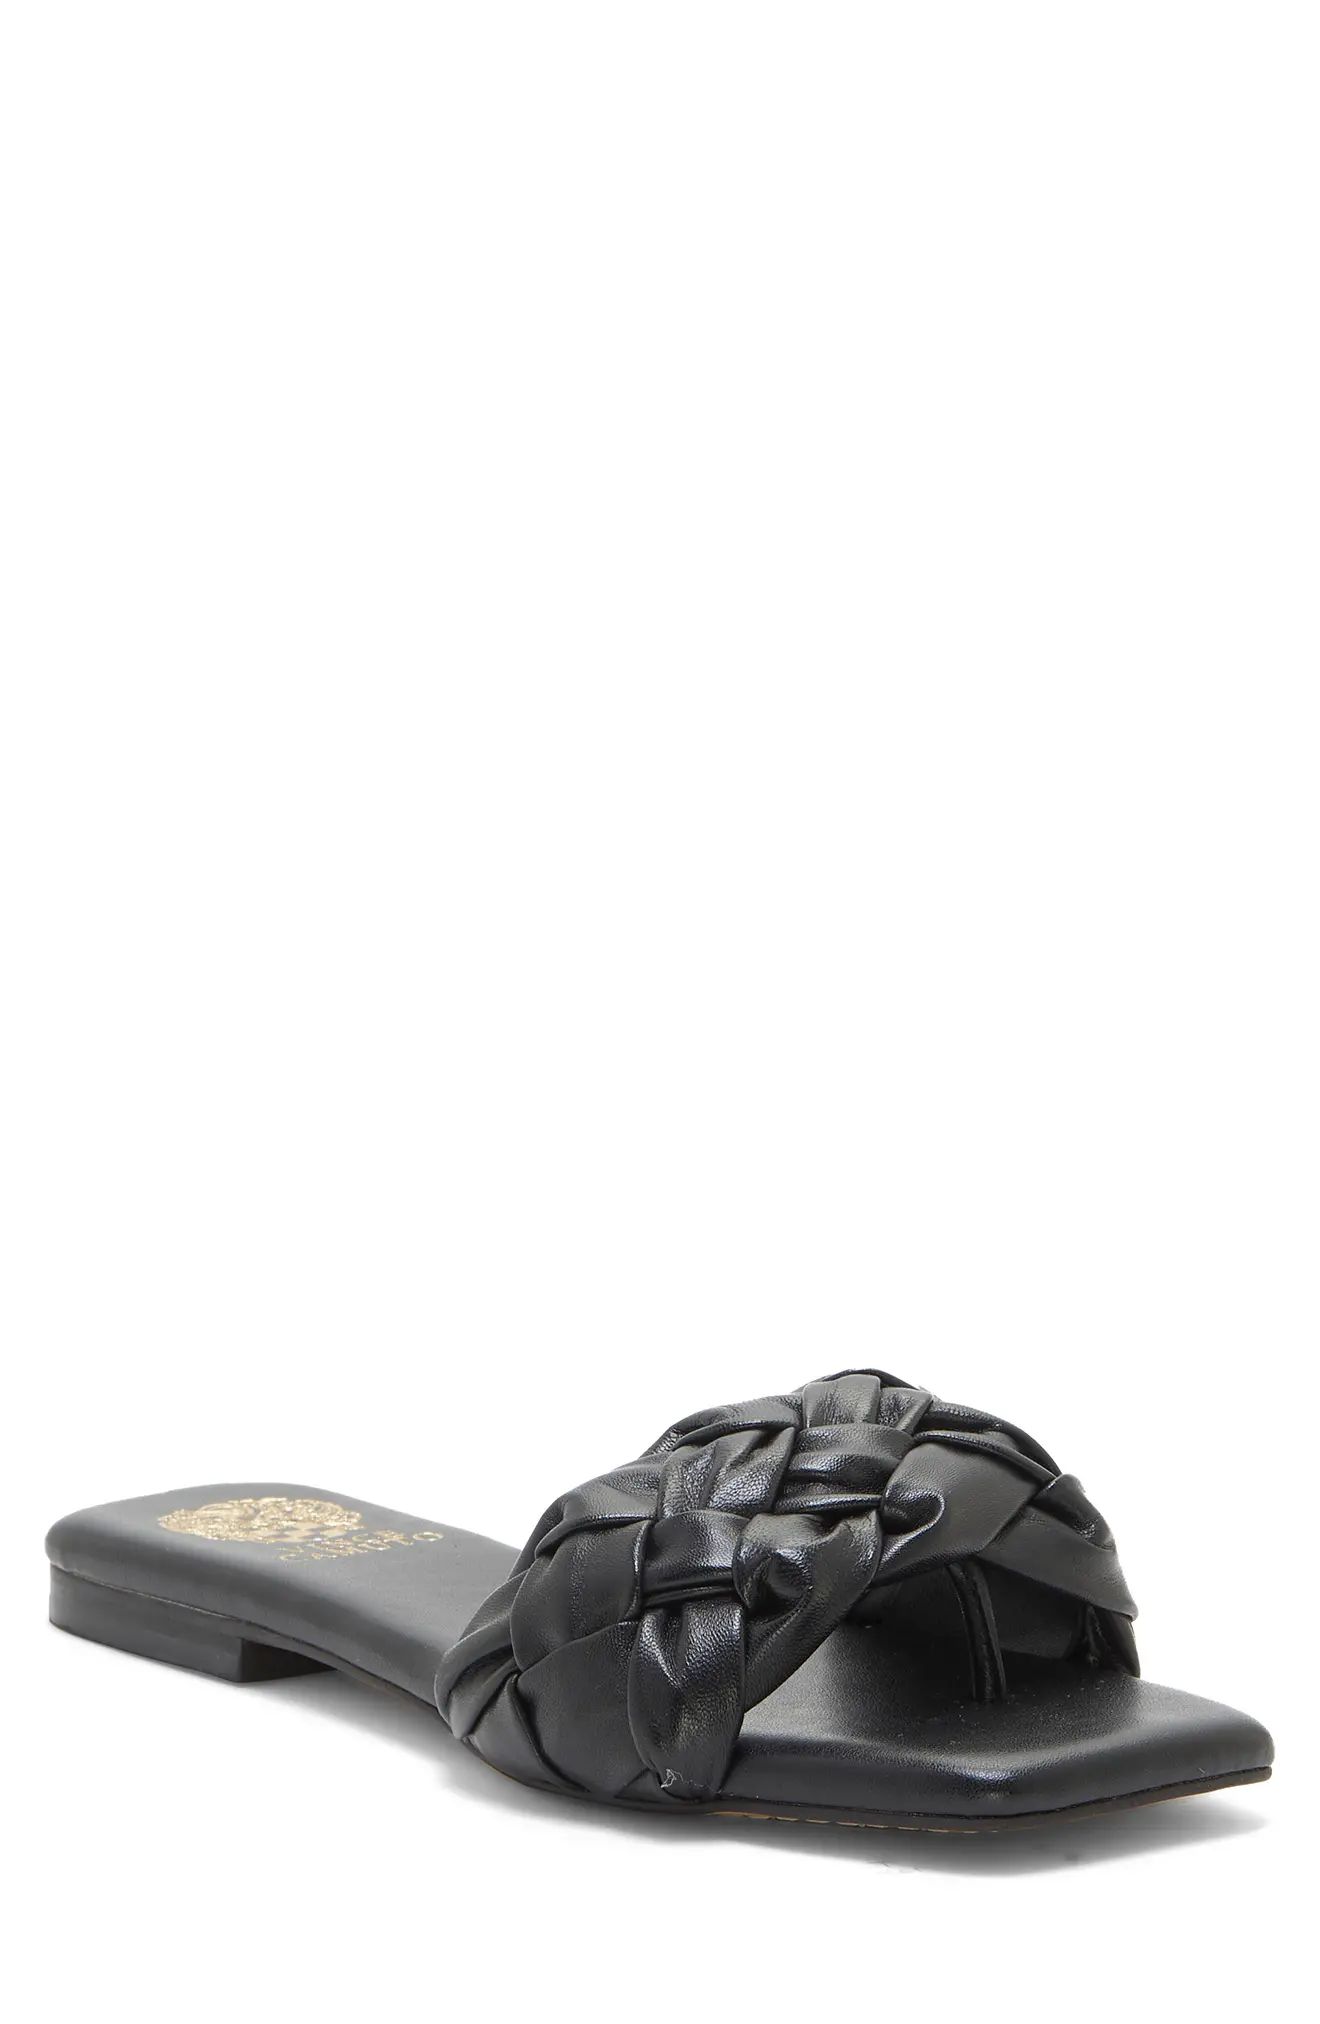 Vince Camuto Antonni Woven Slide Sandal in Black at Nordstrom, Size 10 | Nordstrom